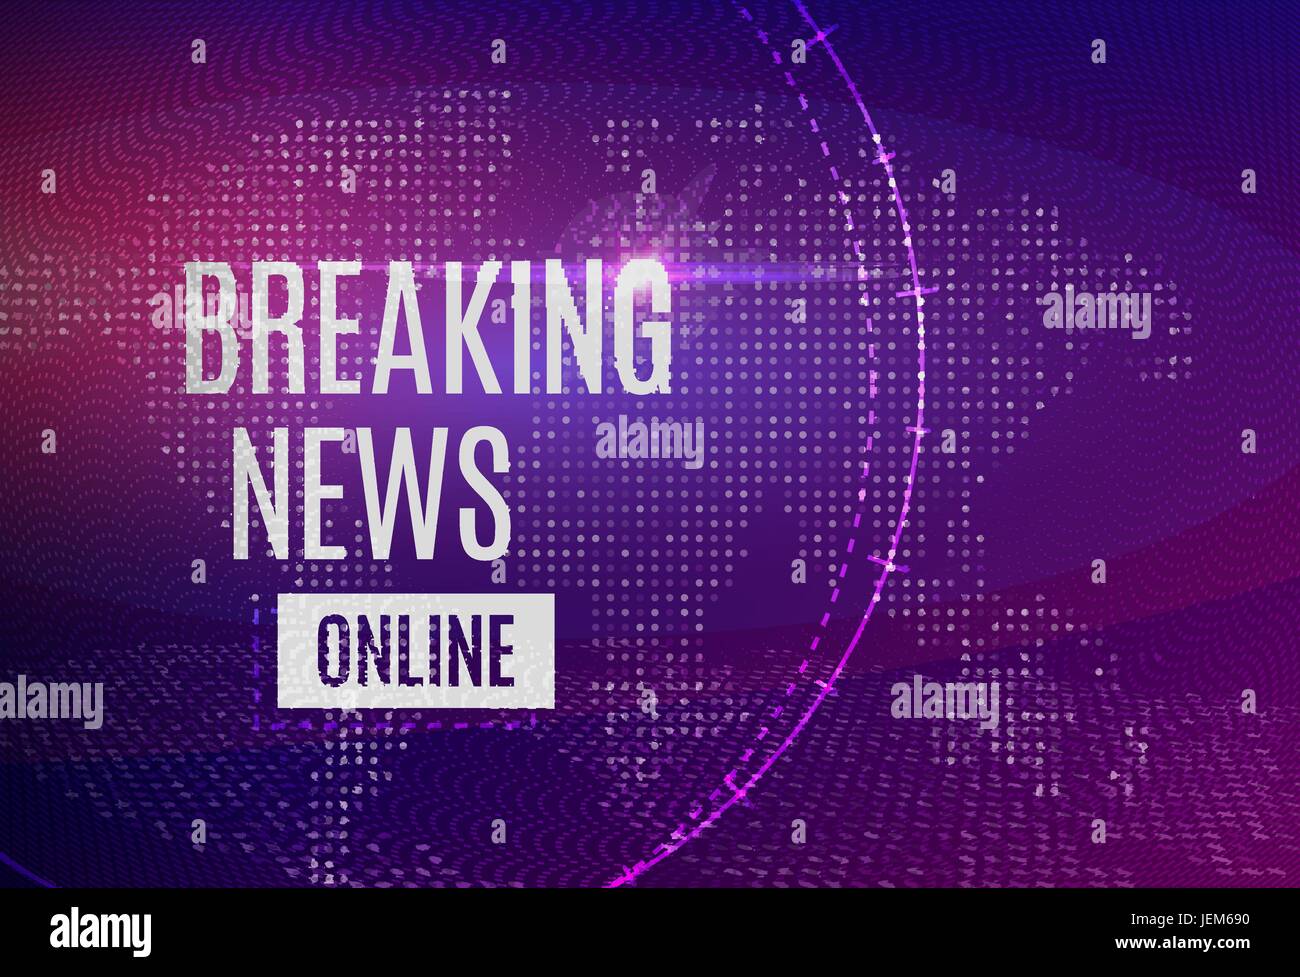 Breaking News online-Ankündigung Meldezeile mit Nachricht über Neuigkeiten auf einem futuristischen hellen Hintergrund mit abstrakten Linien, Punkt und glühende d Stock Vektor